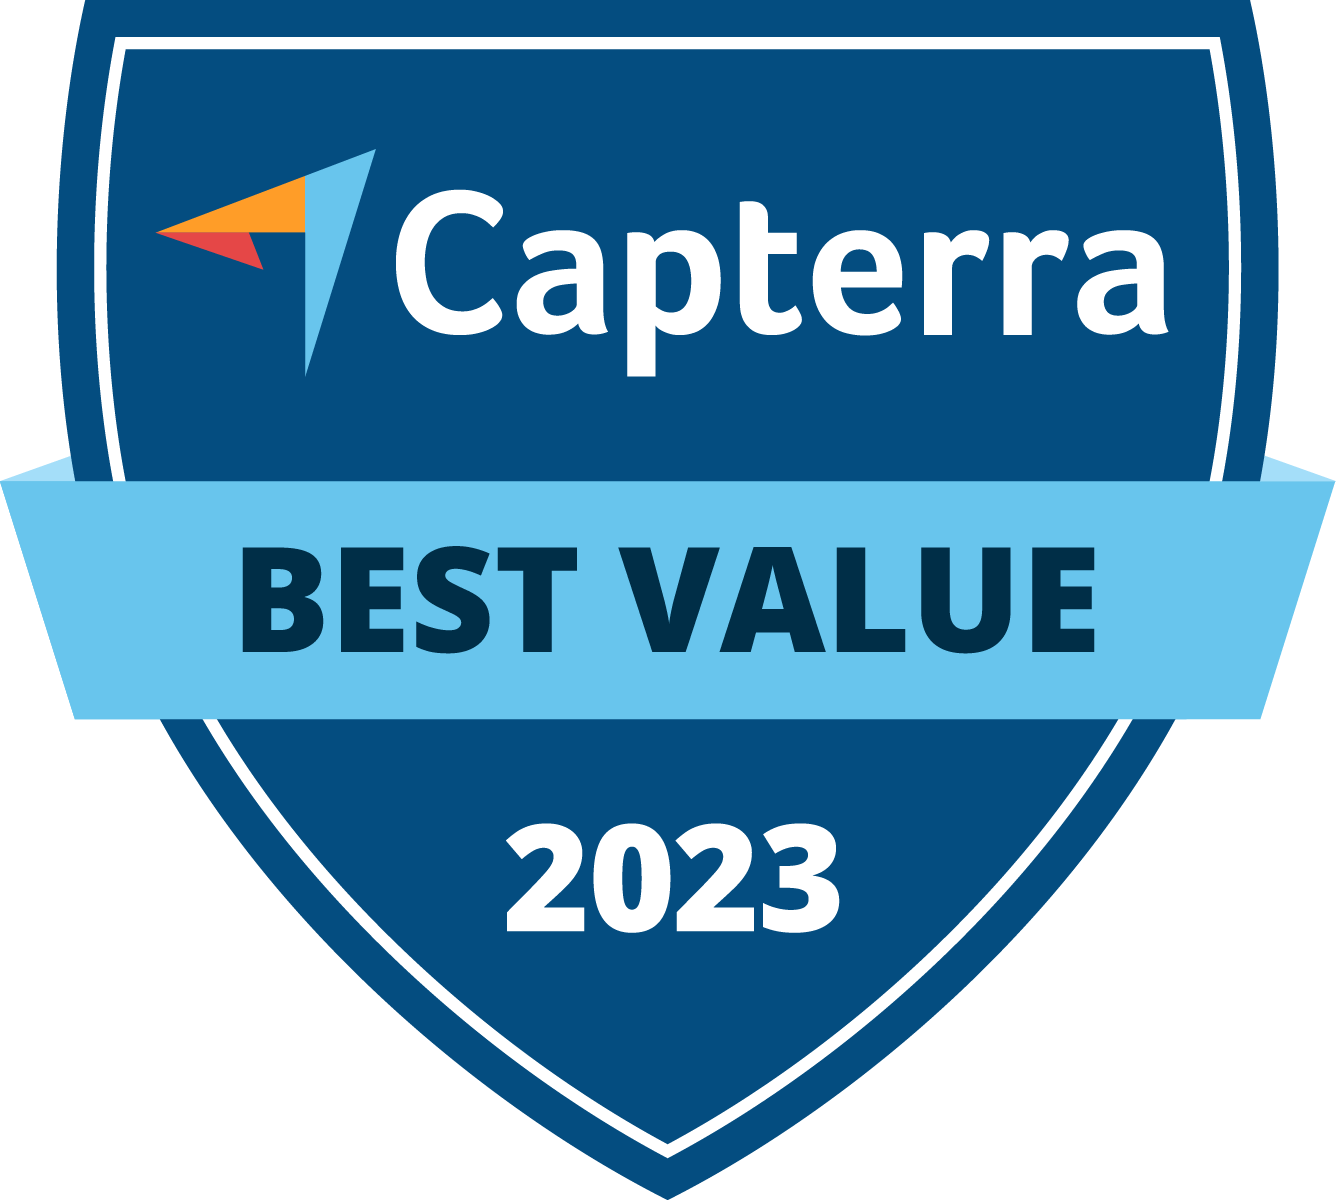 Ca Value 2023 (1)